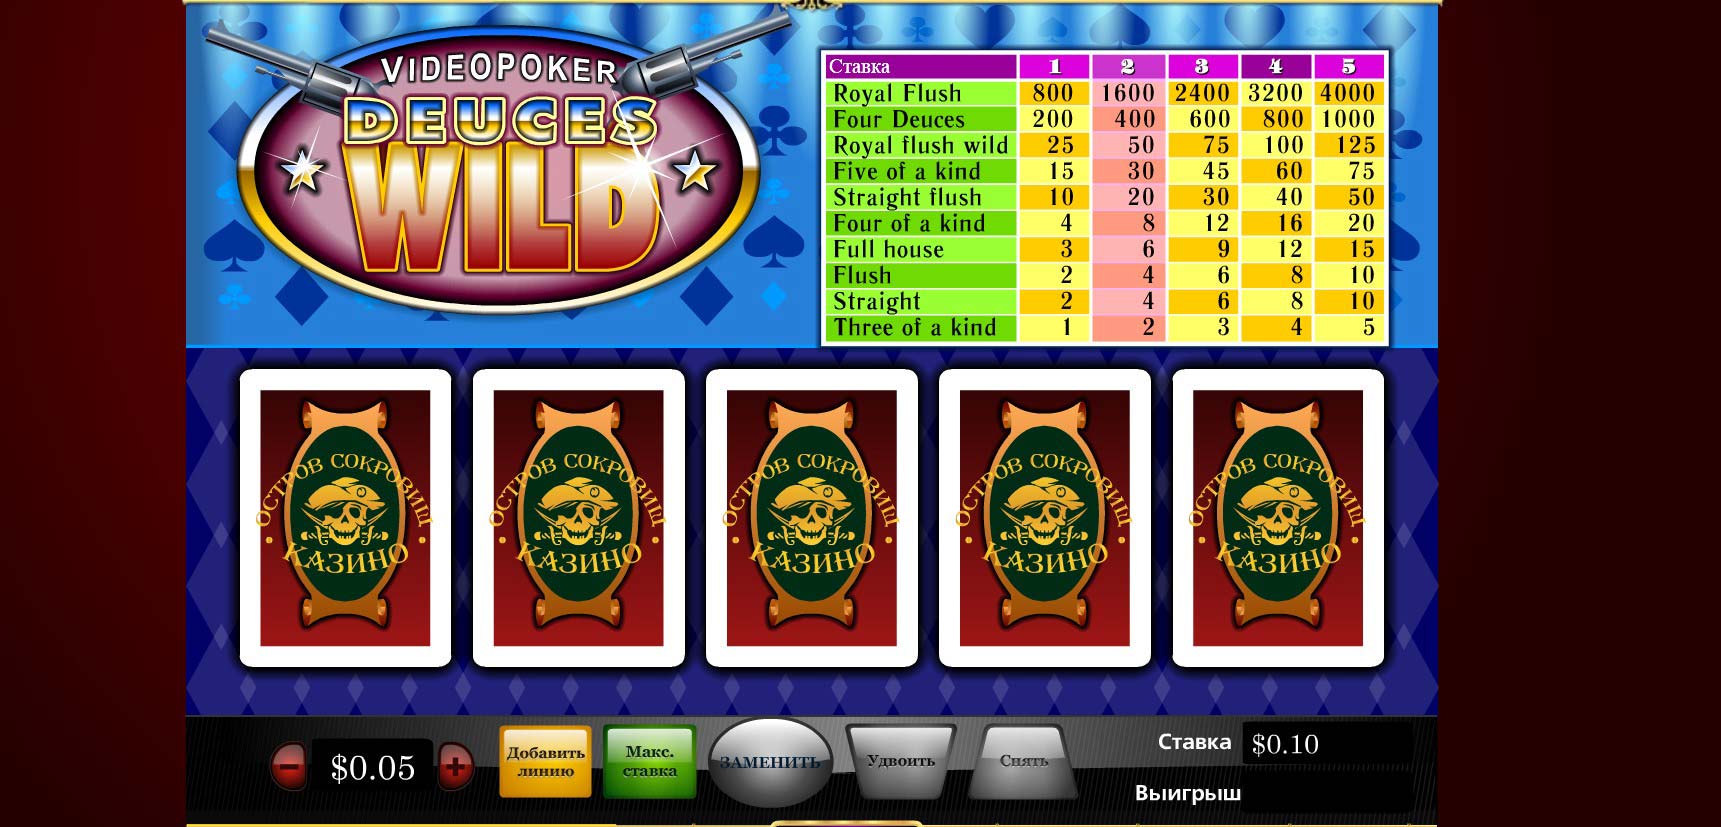 Остров сокровищ казино онлайн wolckano com джойказино приложение на андроид официальный сайт